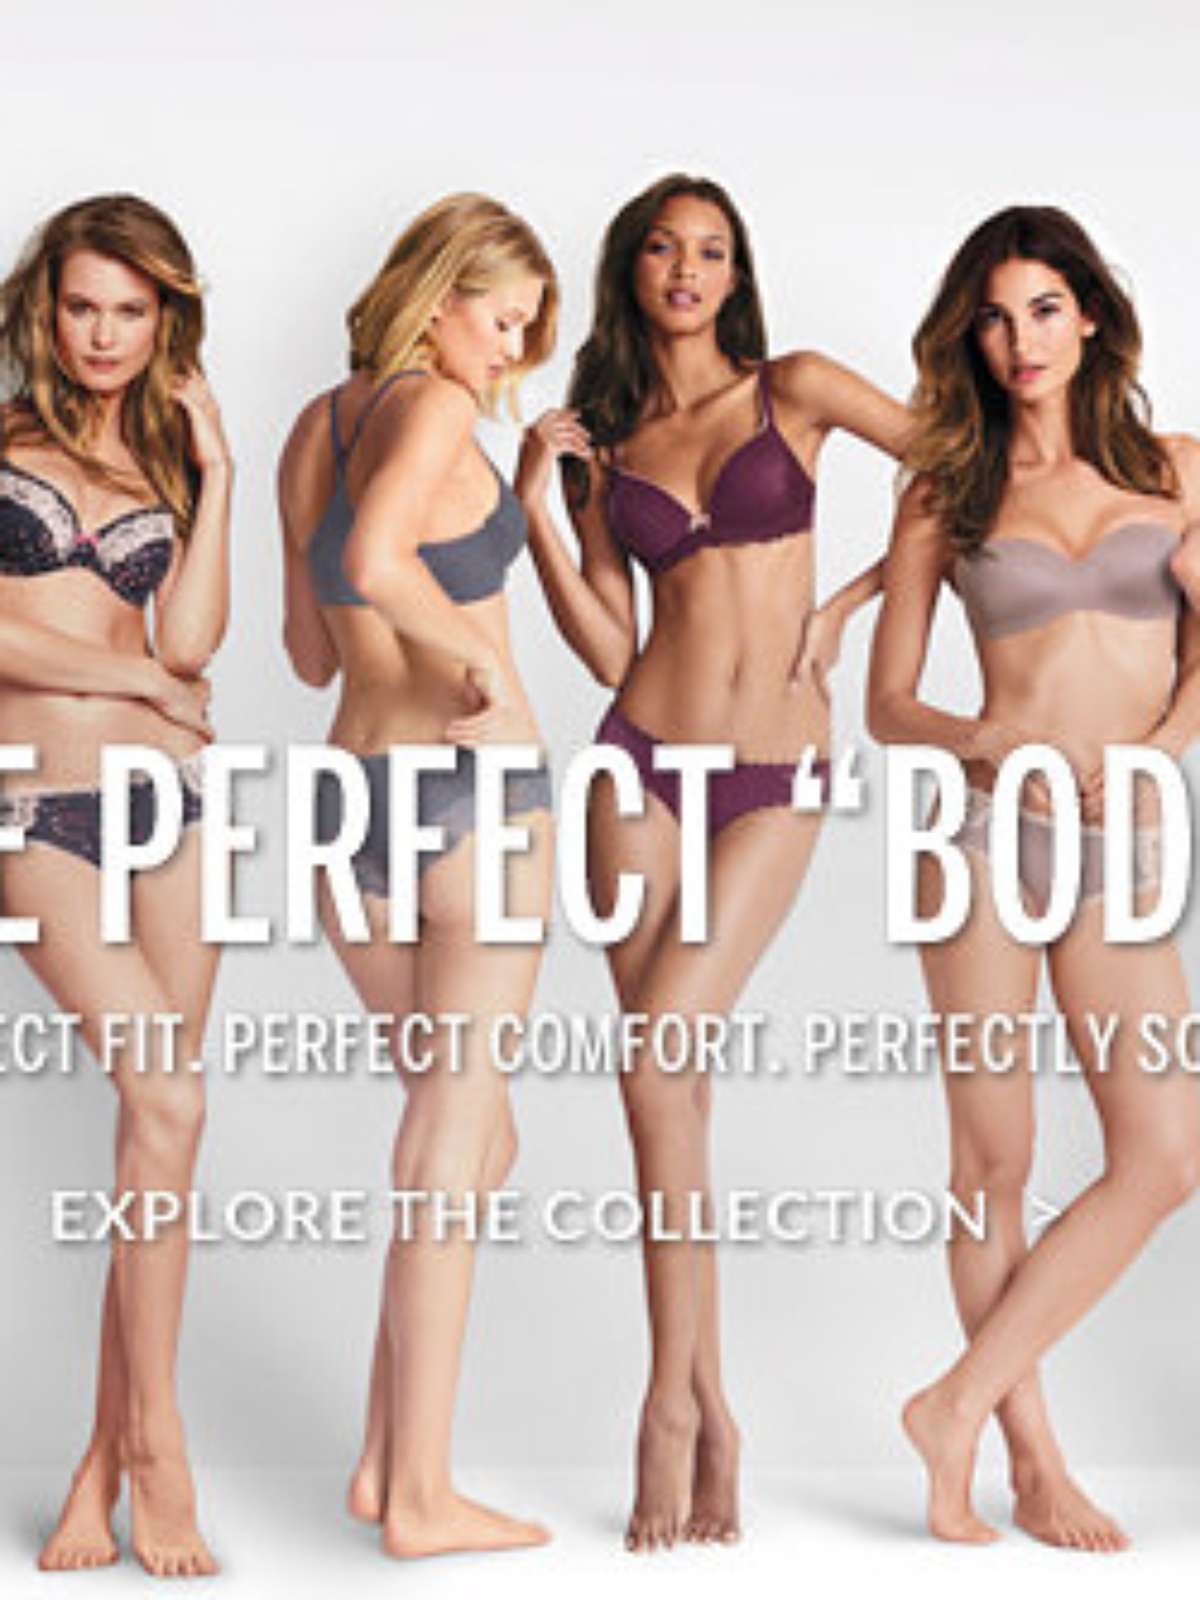 Campanha de lingerie do 'corpo perfeito' gera polêmica